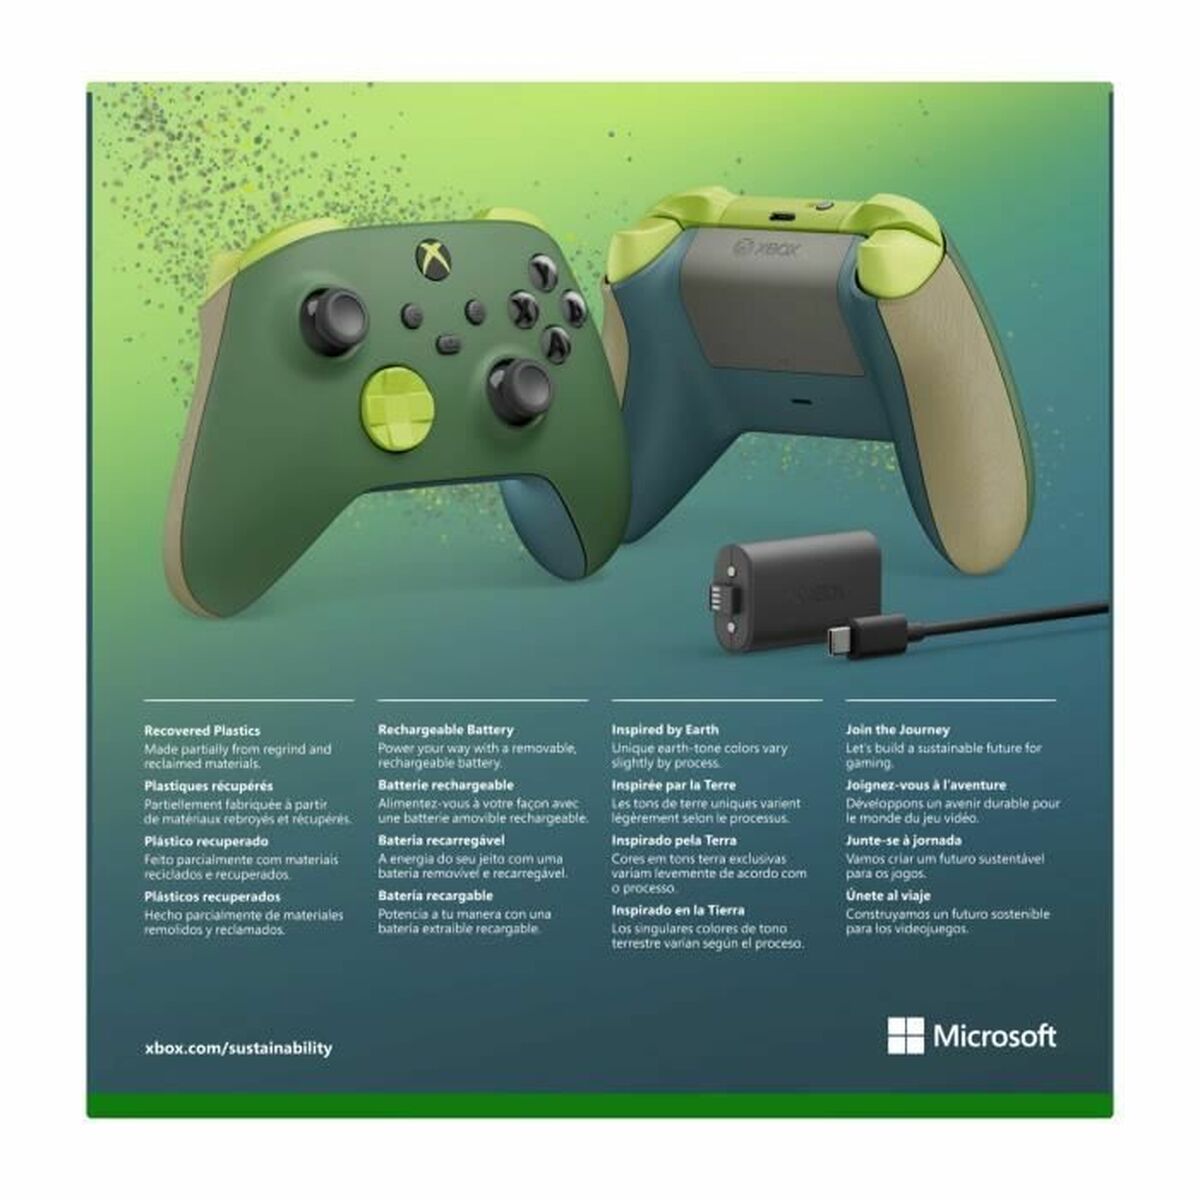 Беспроводный игровой пульт Microsoft Зеленый